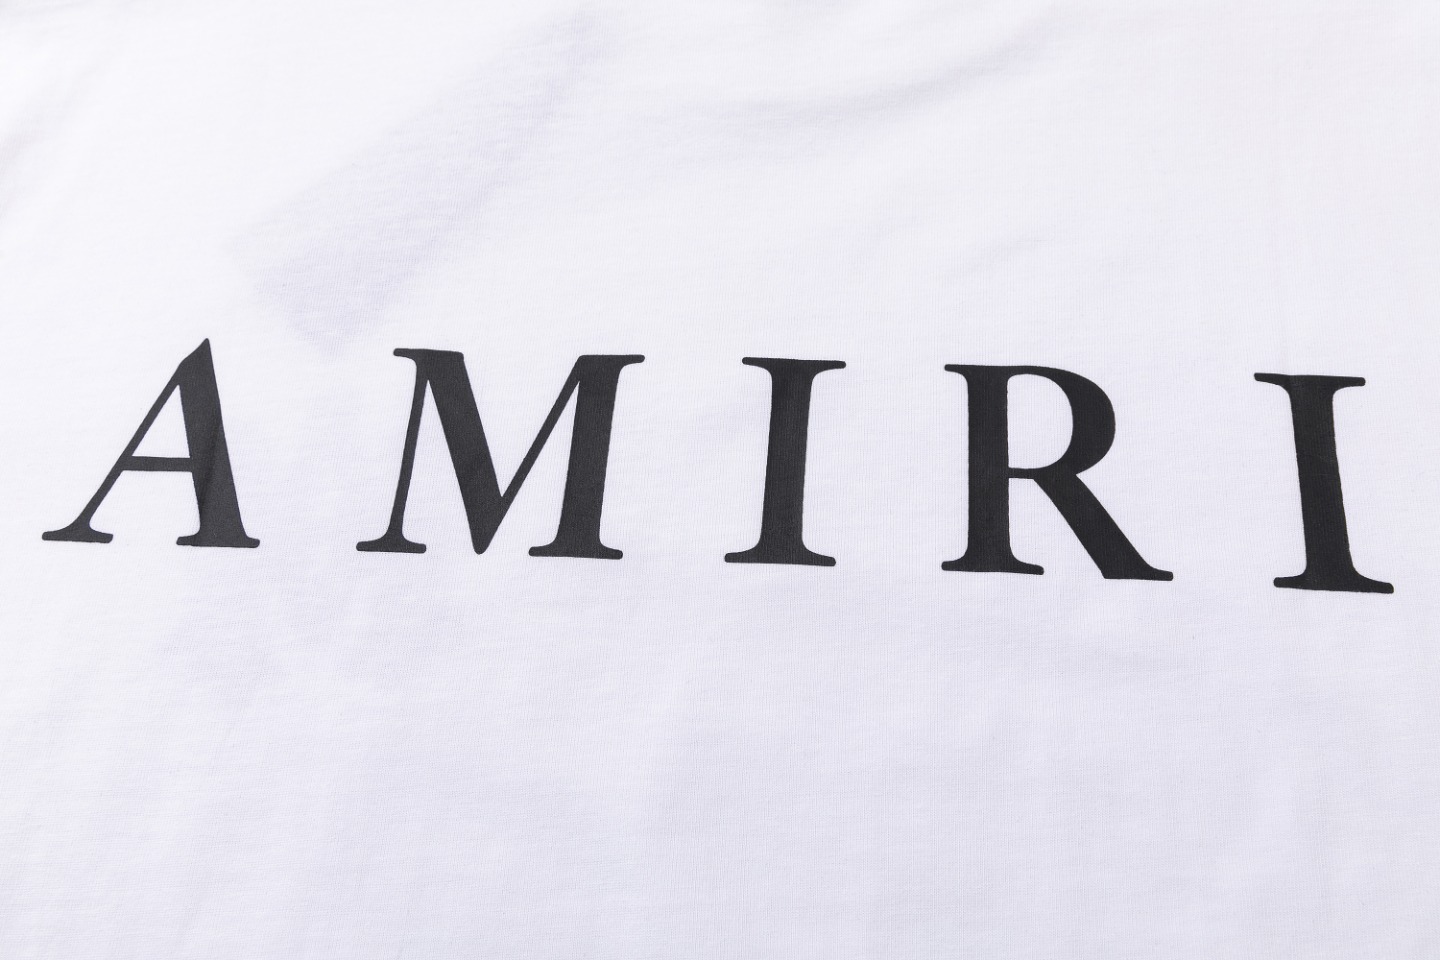 AMIRI 爆買い品質保証 tシャツ 3dモデルスーパーコピー 半袖 柔らかい プリント 純綿 ファッション トップス  2色可選_5